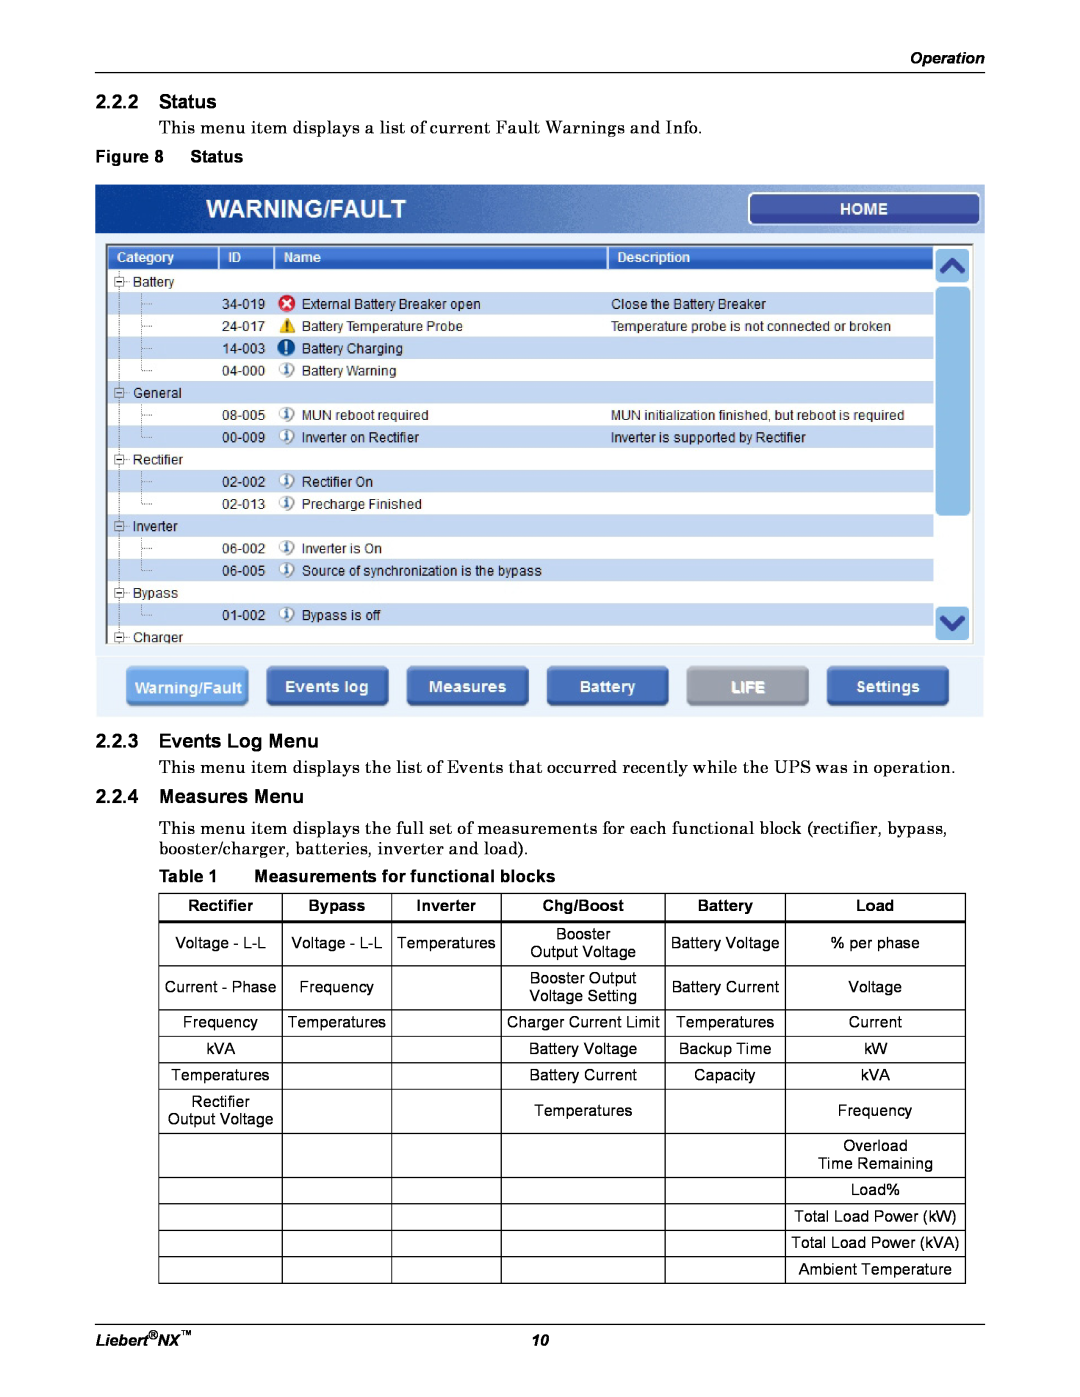 Emerson NX manual Status, Events Log Menu, Measures Menu, Measurements for functional blocks 